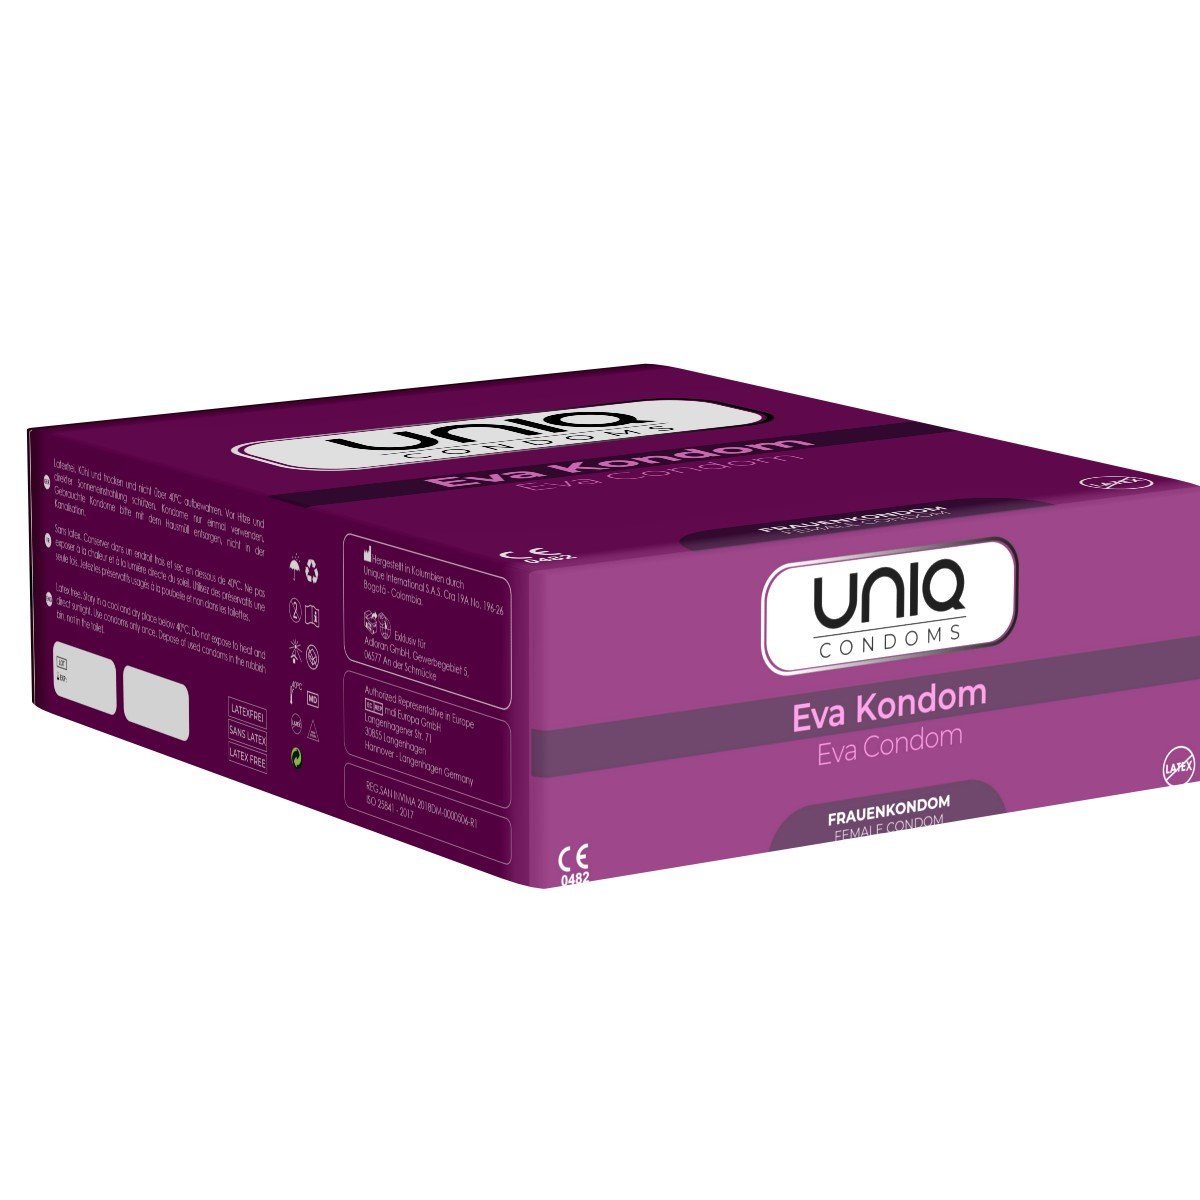 UNIQ Kondome Eva Condom (latexfreie Frauenkondome) auch mit Gleitgel auf Öl-Basis verwendbar, Packung mit, 50 St., Kondome für Frauen, Kondomslip, passt sich dem weiblichen Körper perfekt an